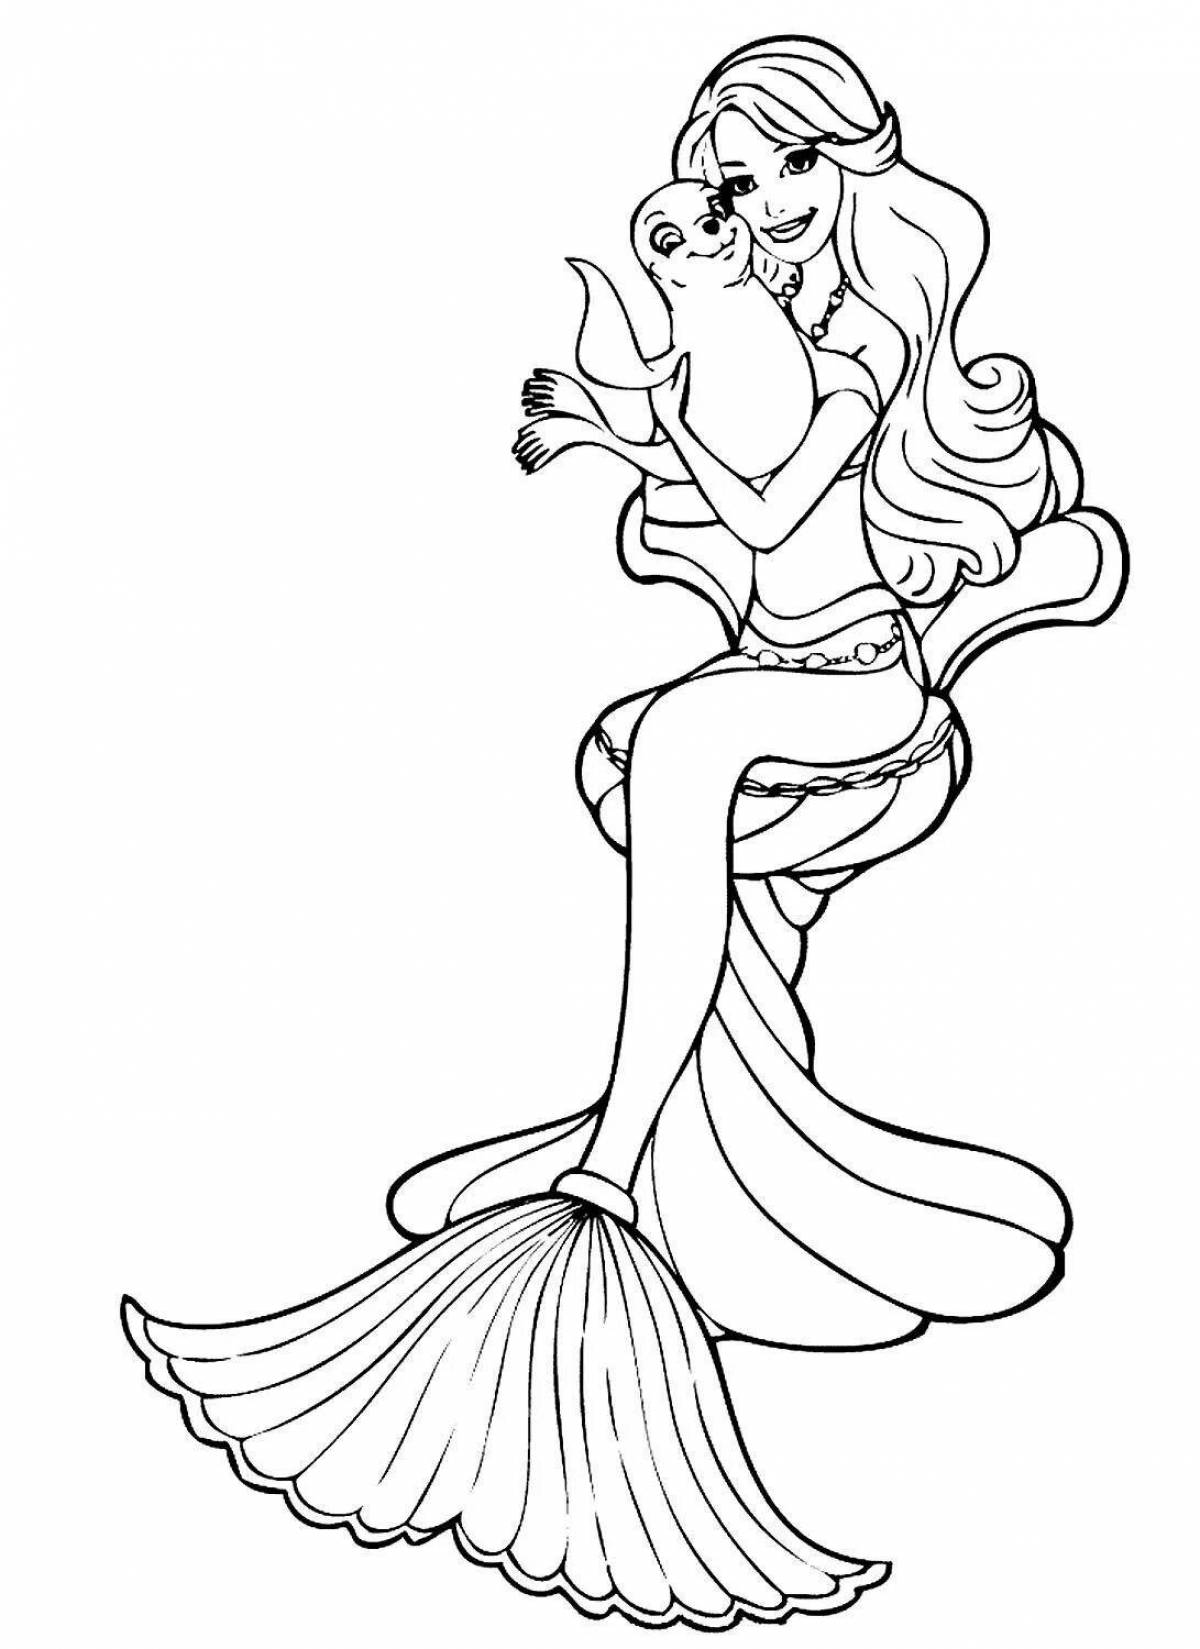 Angel coloring barbie doll mermaid